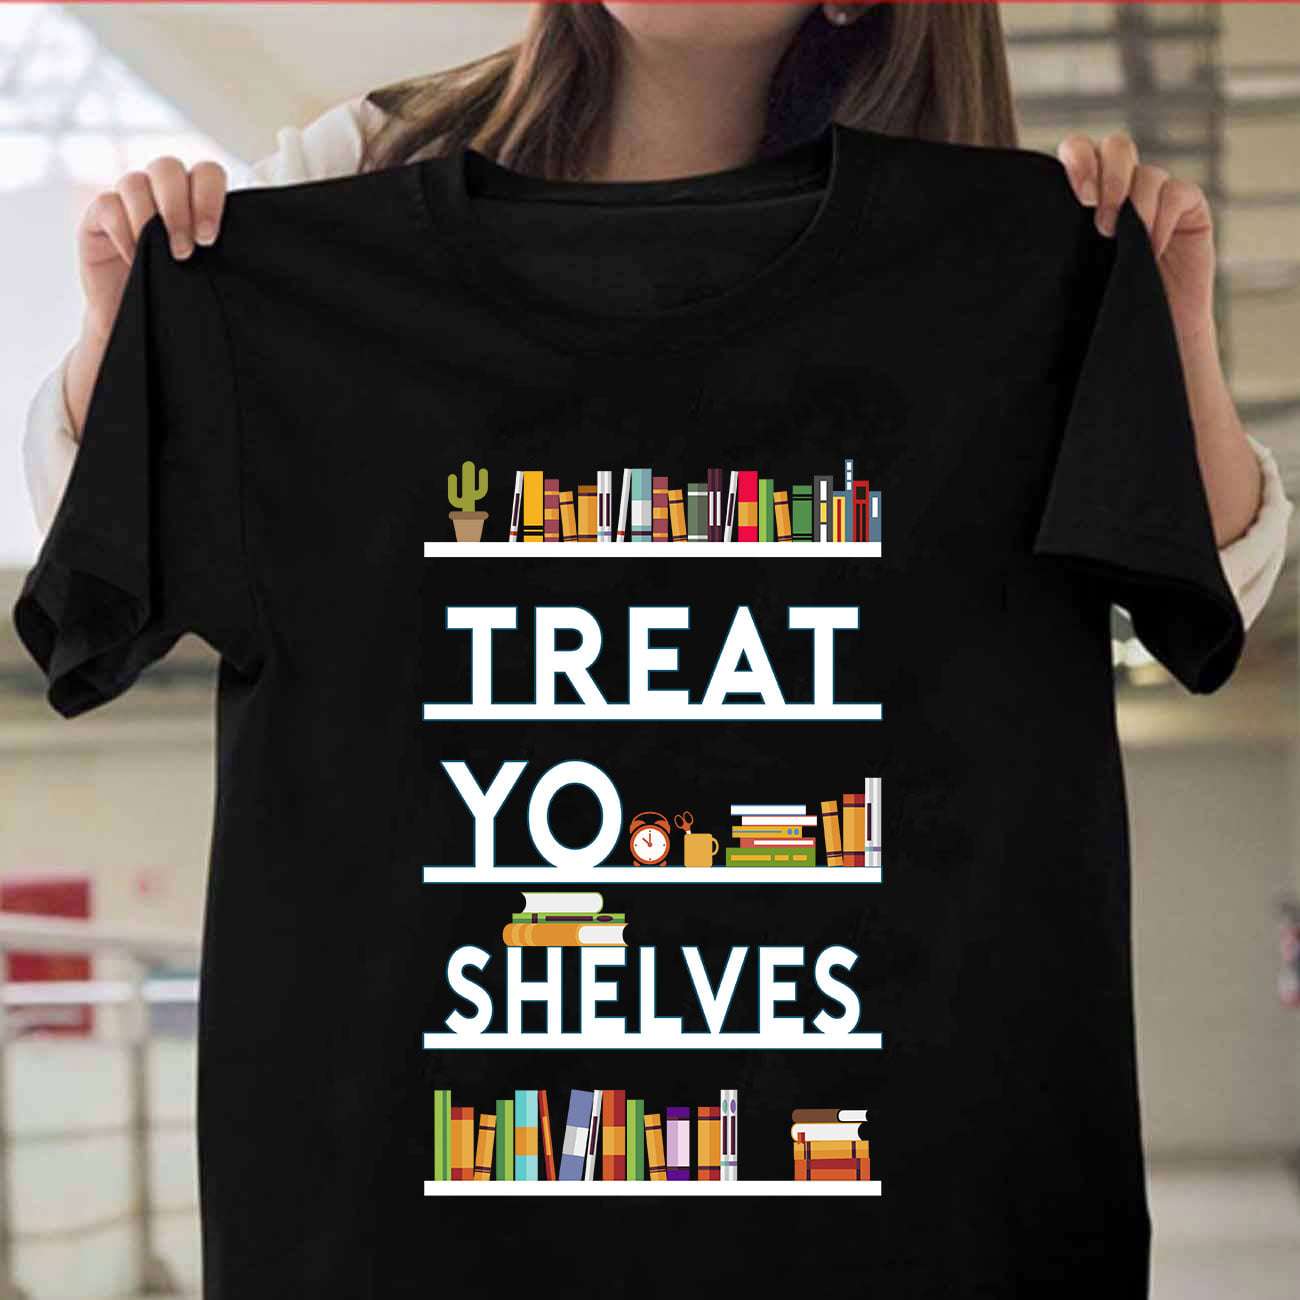 Treat yo shelves - Book shelves, love reading books, T-shirt for book lover